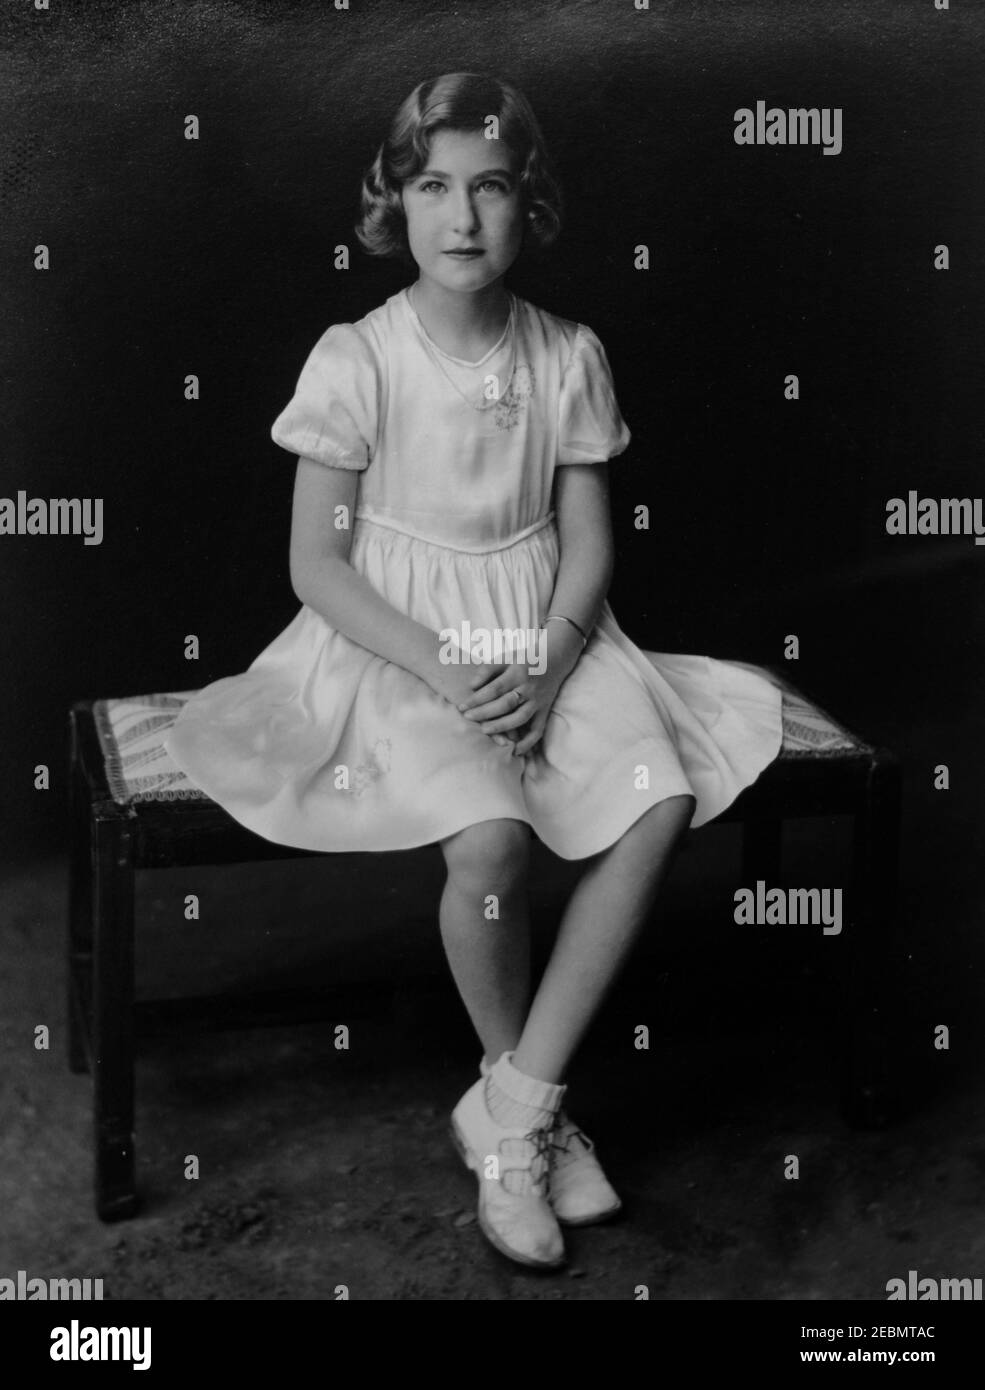 Fotografia monocromatica d'epoca di una bella ragazza caucasica in un vestito bianco, risalente all'epoca edoardiana degli anni '20. Foto Stock